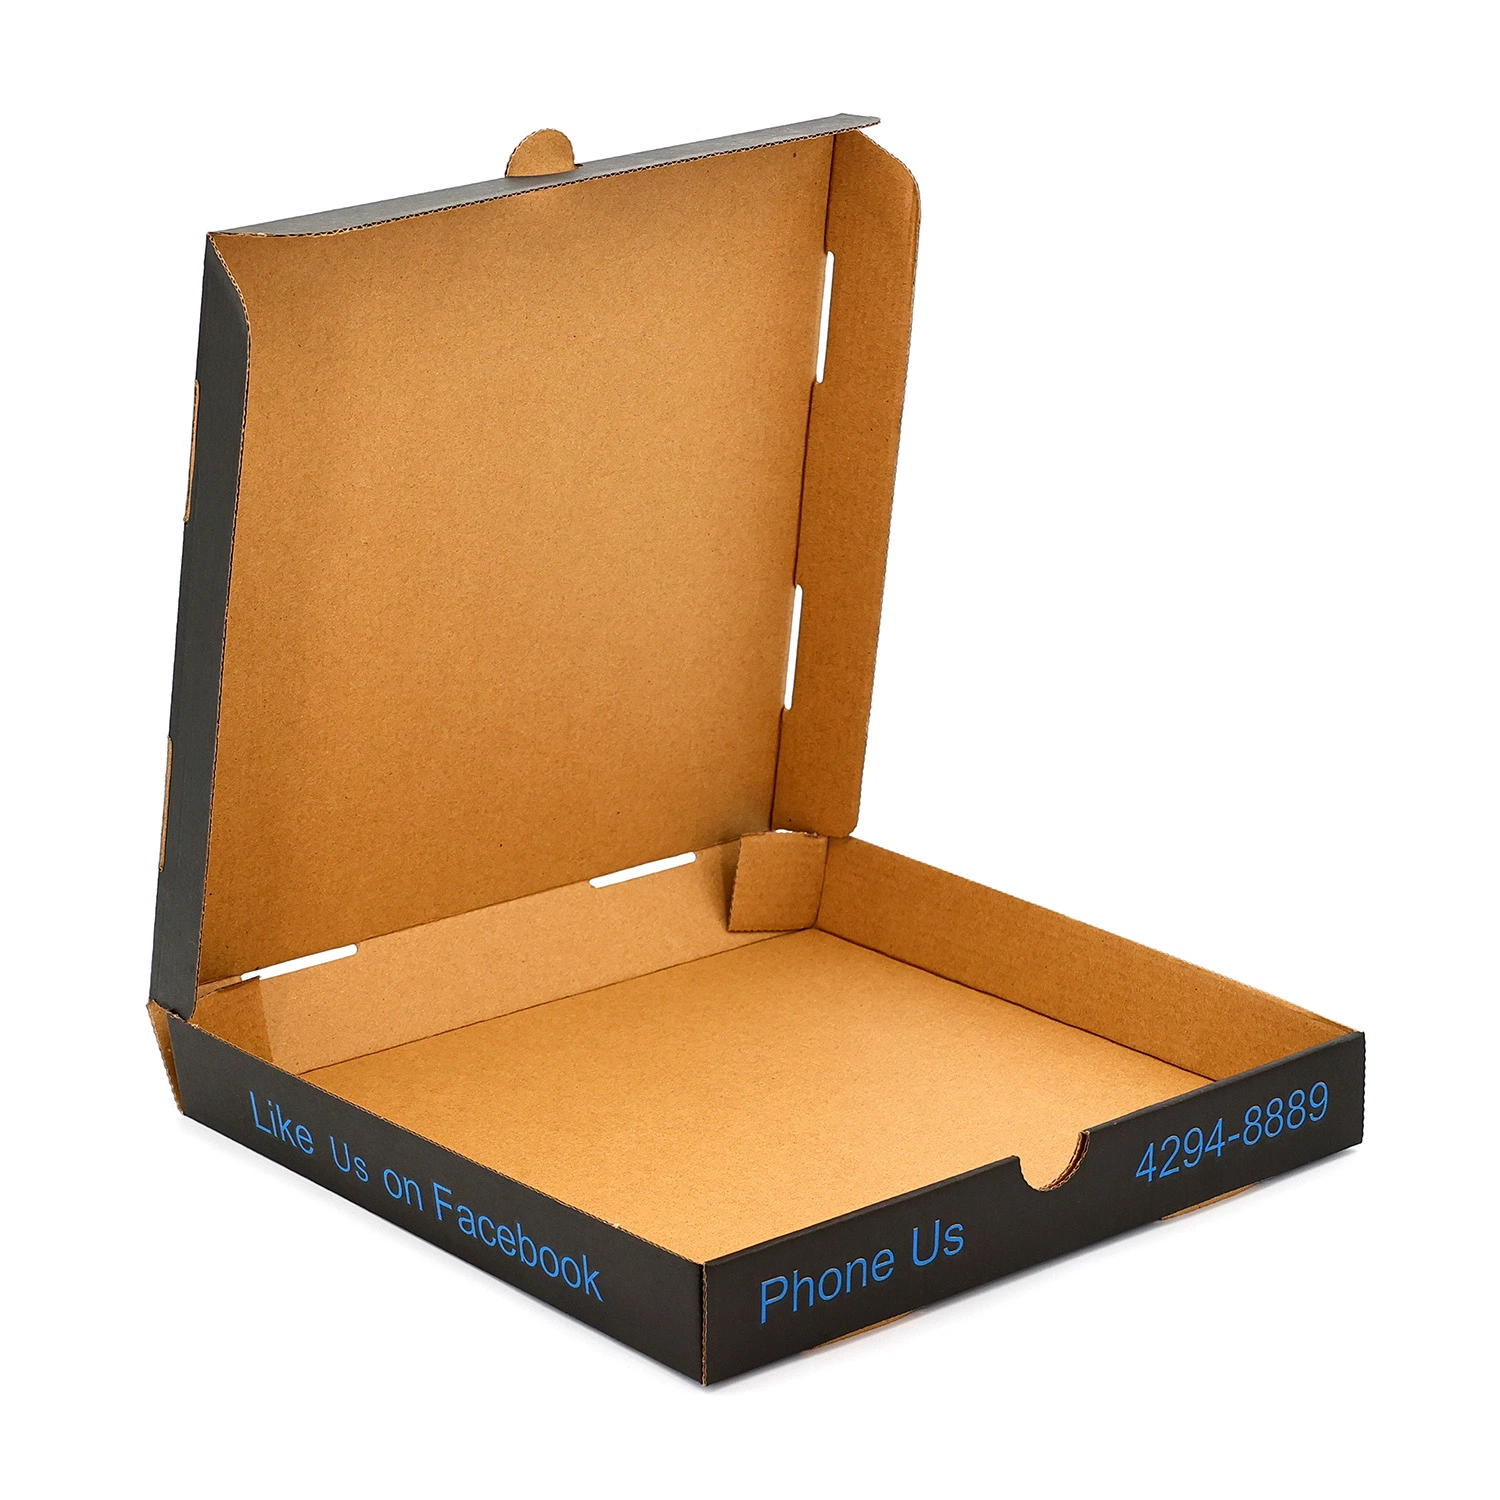 Custom печатной бумаги треугольника пицца ящики упаковка